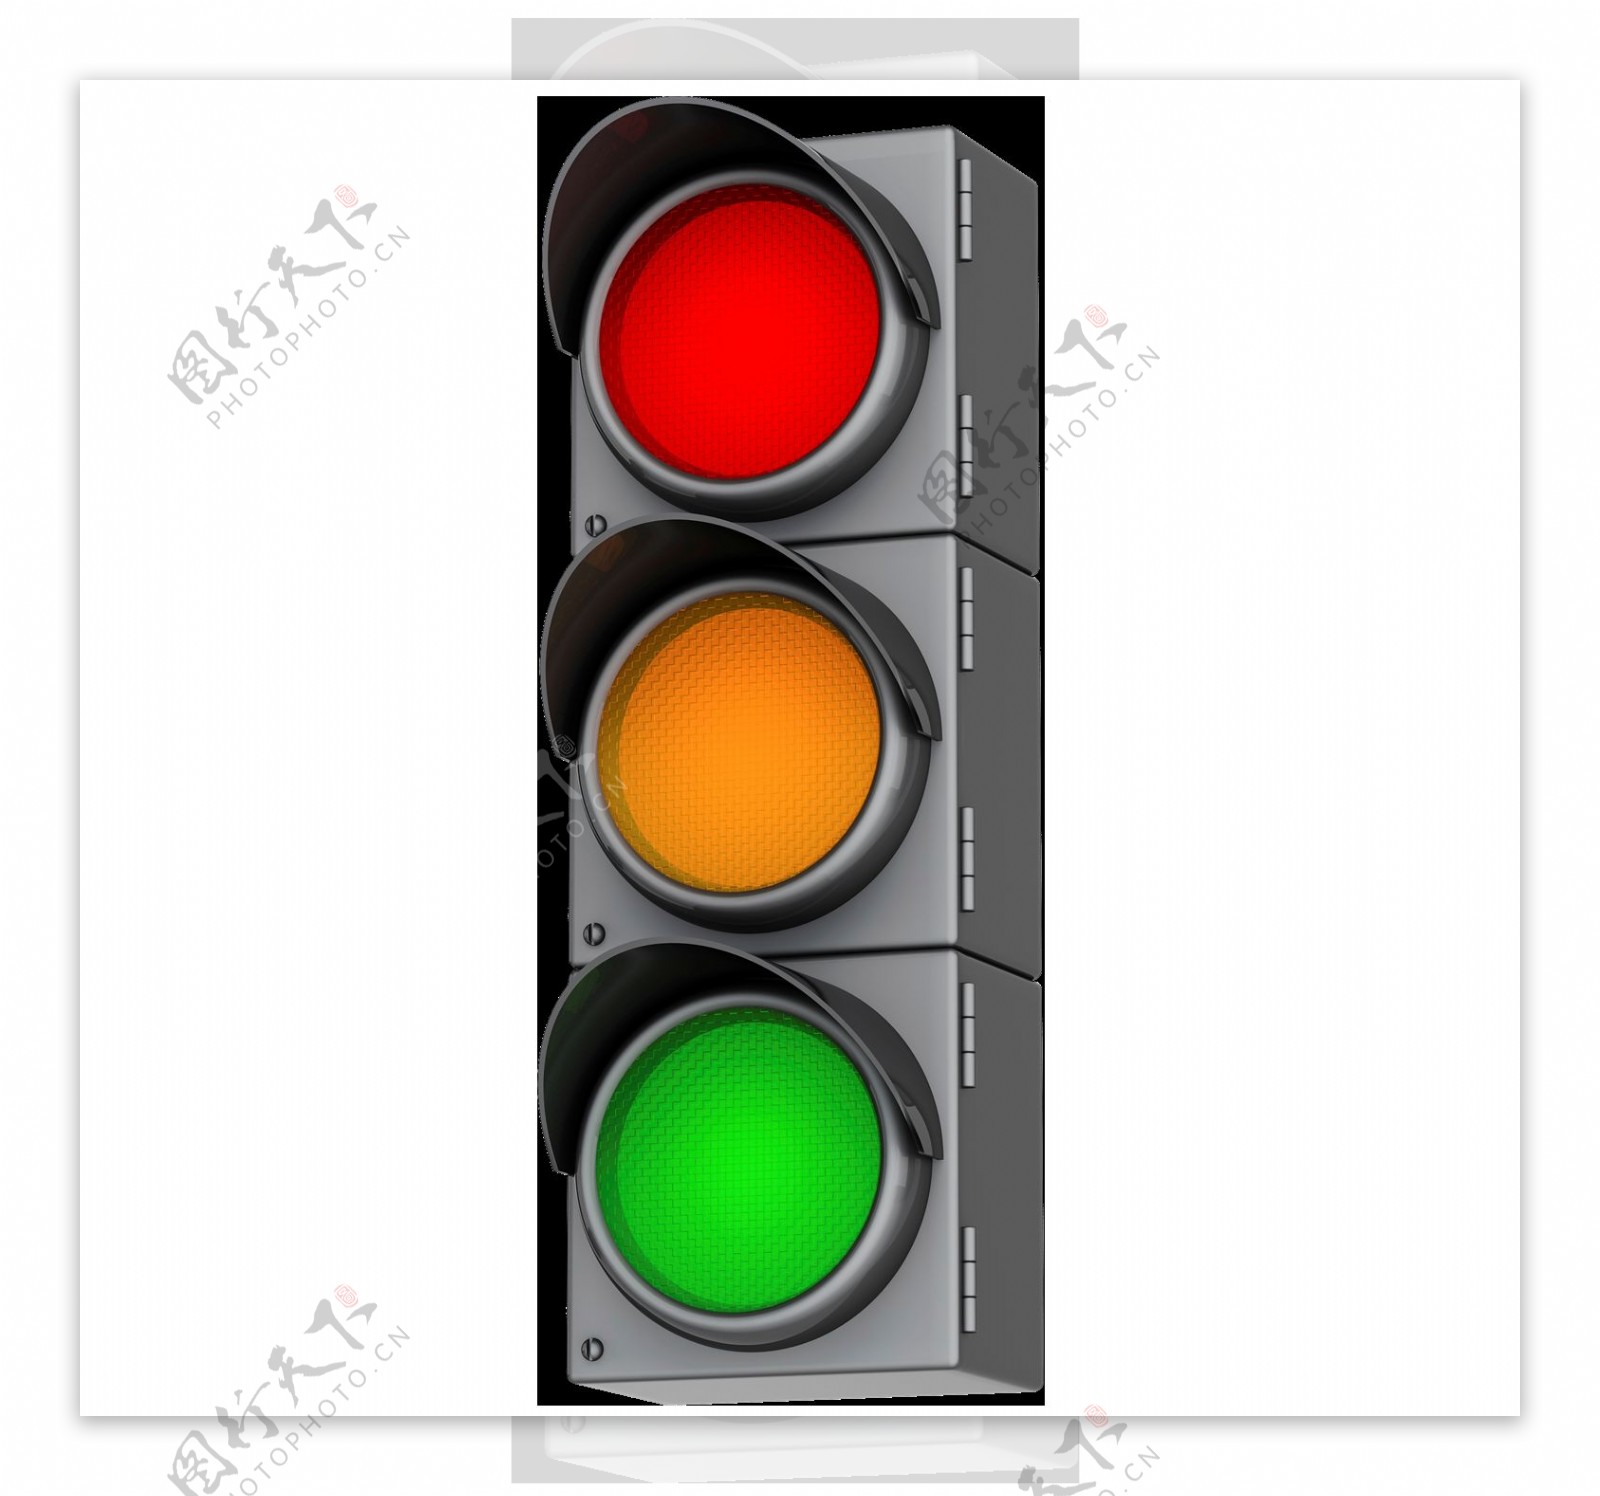 交通红绿灯png元素